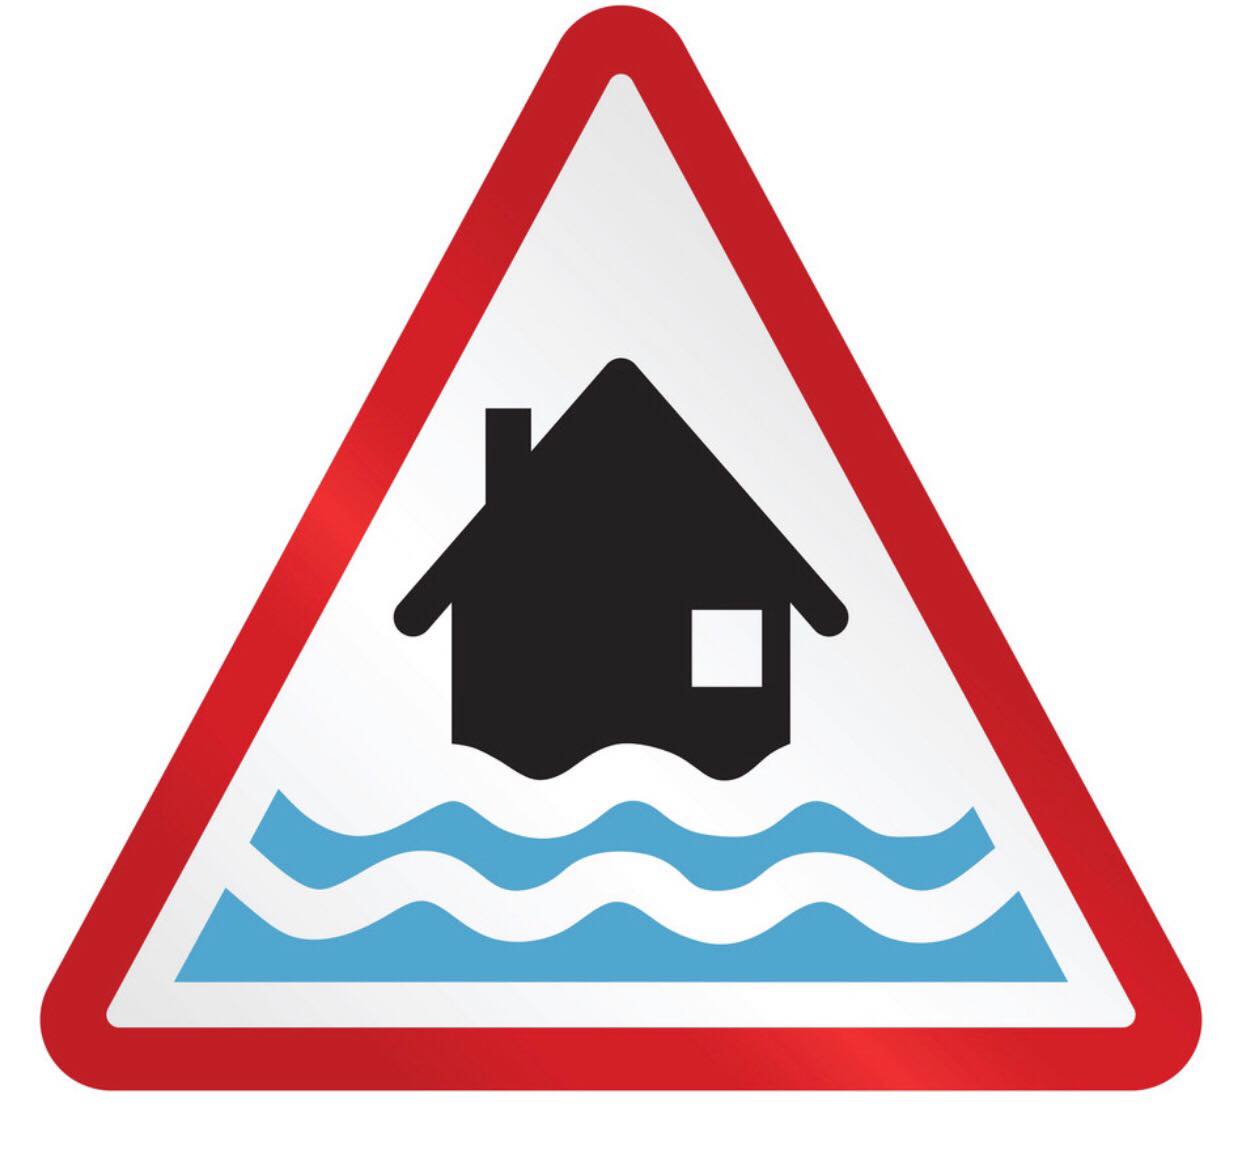 Register for flood alerts this Flood Action Week